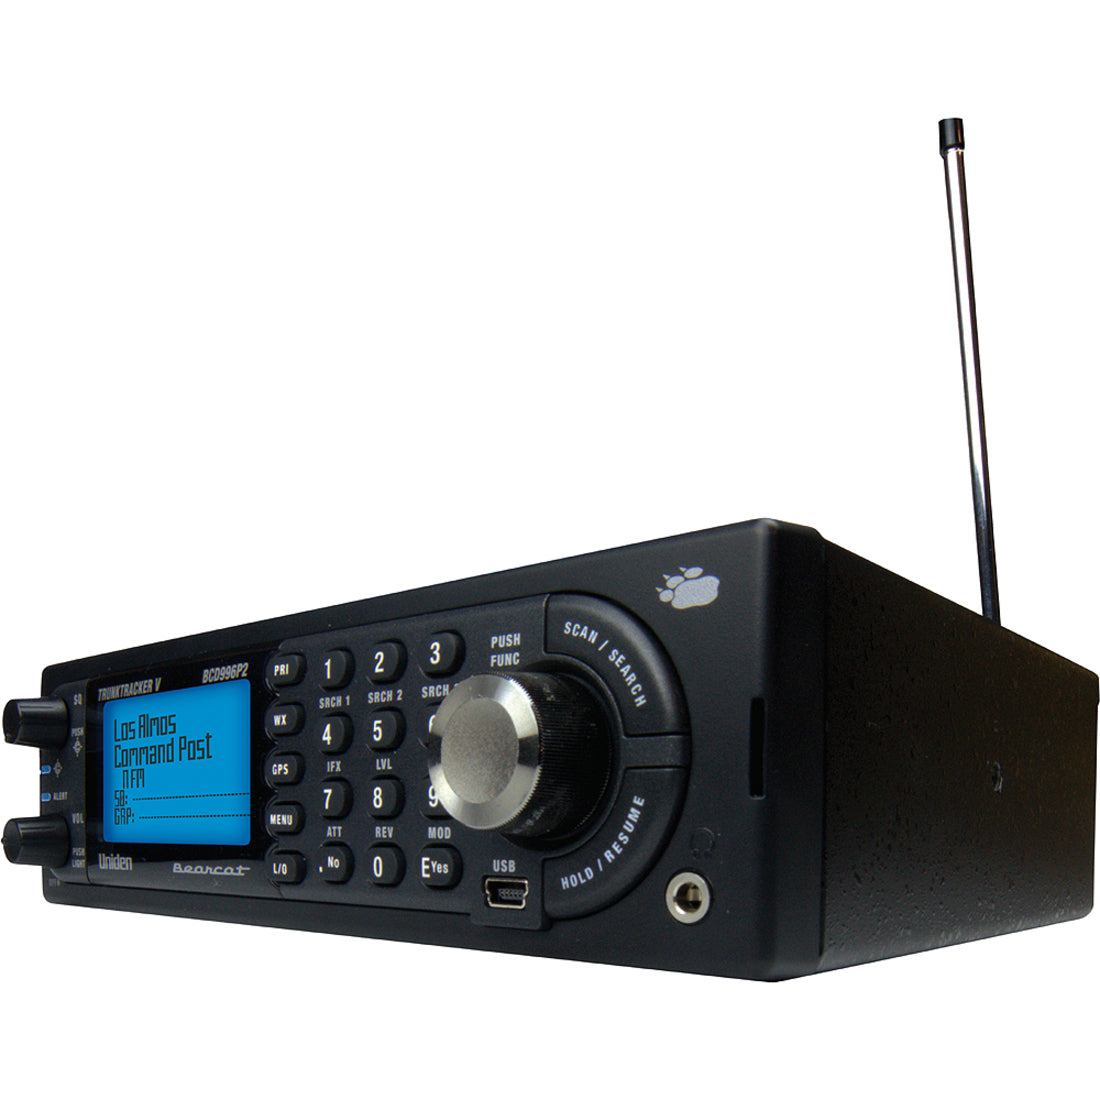 Uniden BCD996P2 Digital Mobile TrunkTracker V Scanner, 25000 Channels, Weatherband